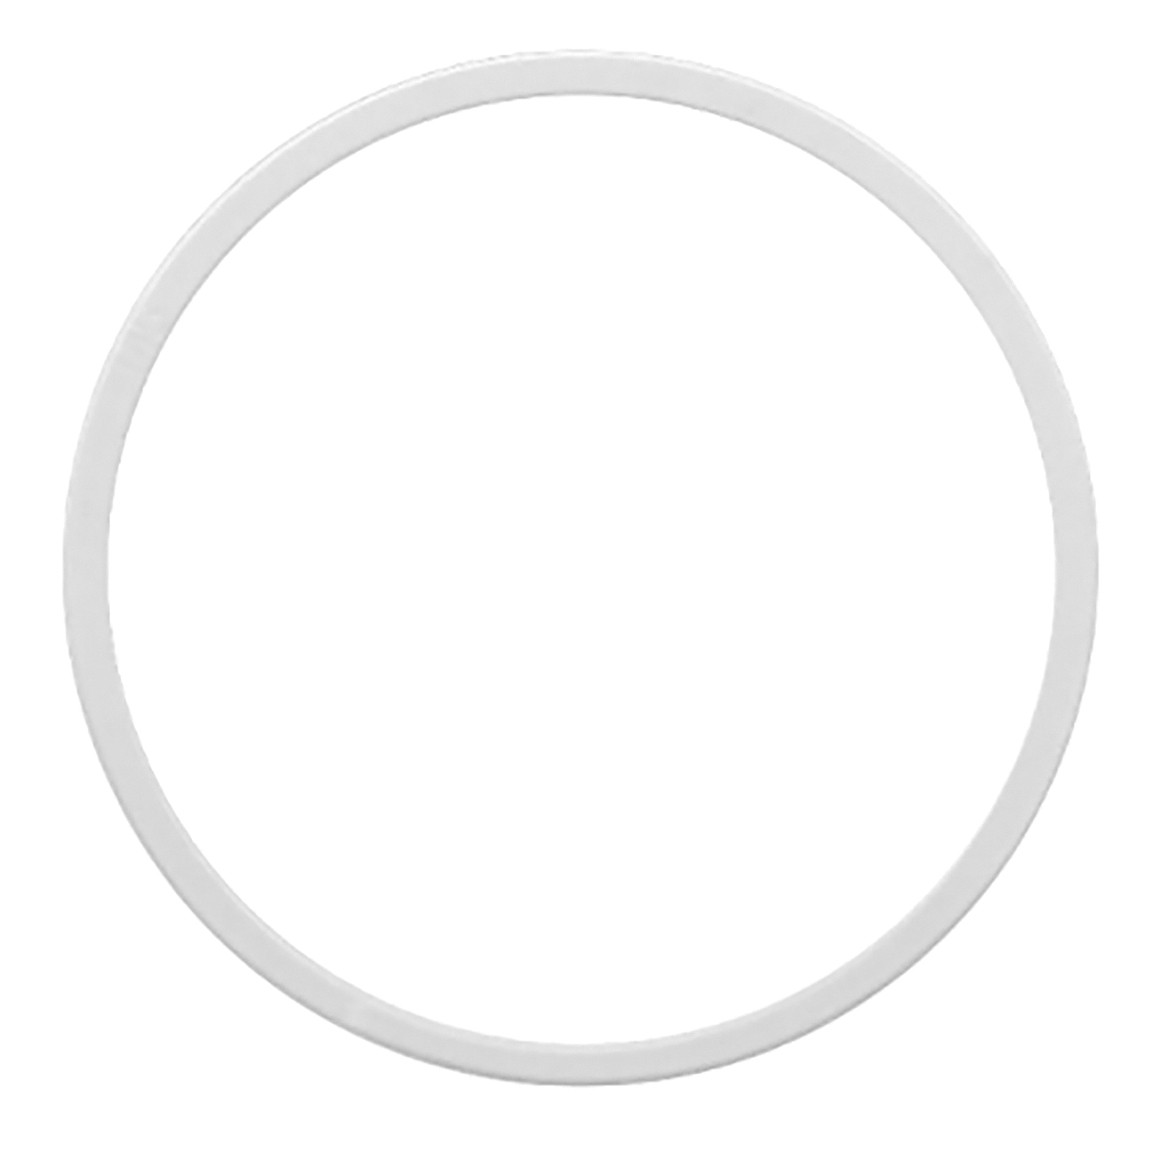 Кольцо под светильник, Ø (мм): 165, 170, 175, 180, 185, 190, 195, 200, 205